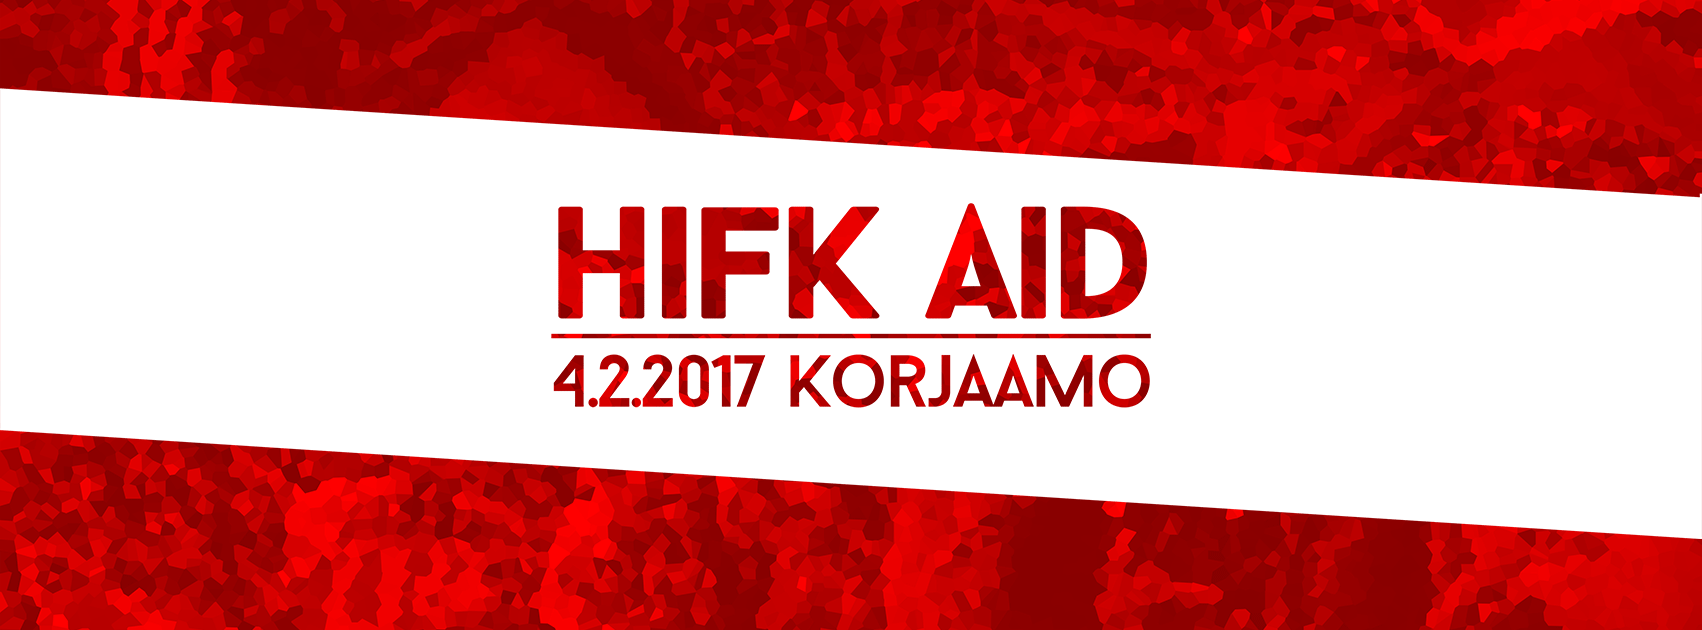 HIFK:n kannattajien järjestämä HIFK AID lauantaina Korjaamolla